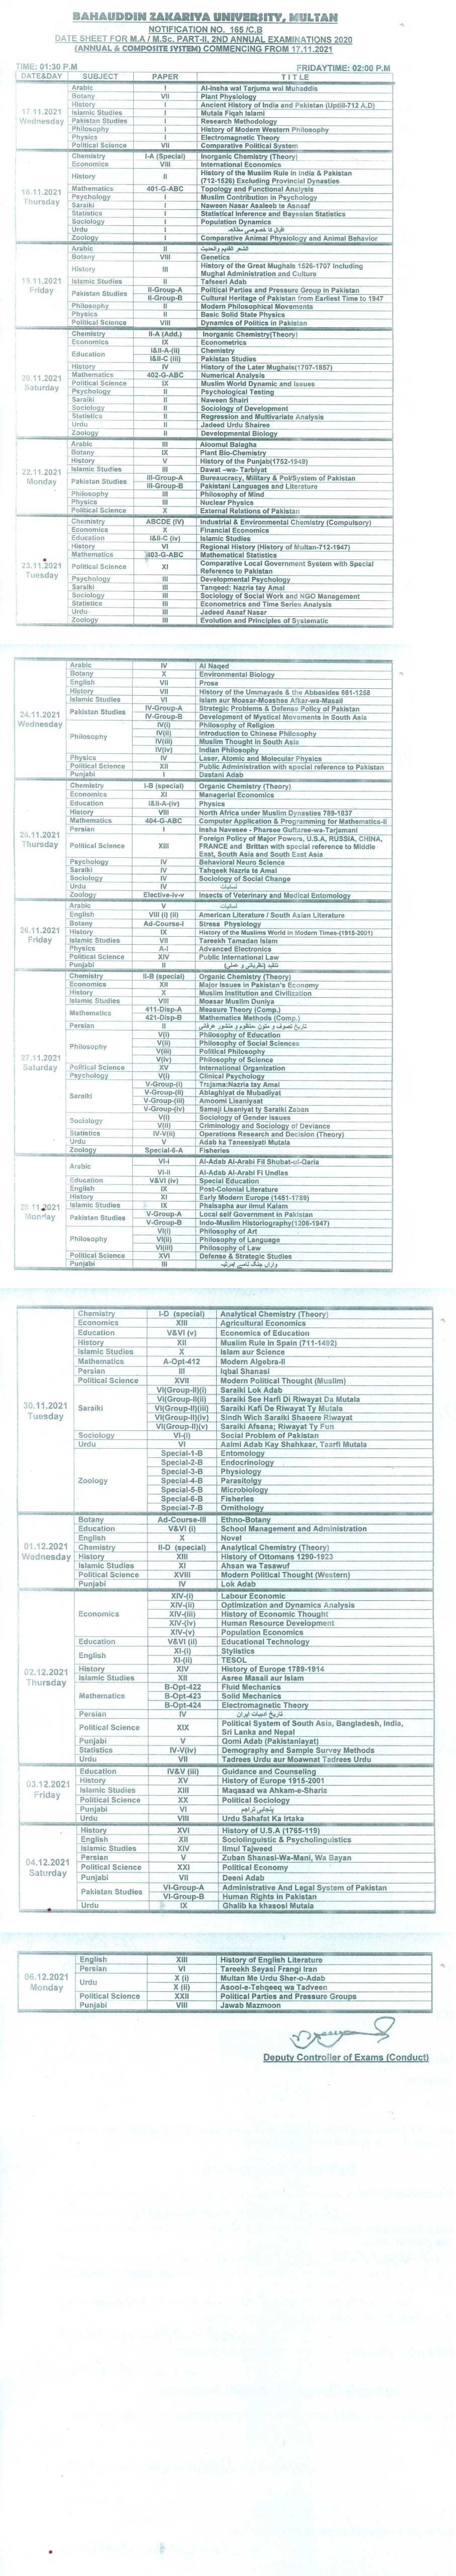 Date Sheet MA MSc 2020 Annual Exam Part 2 BZU Multan